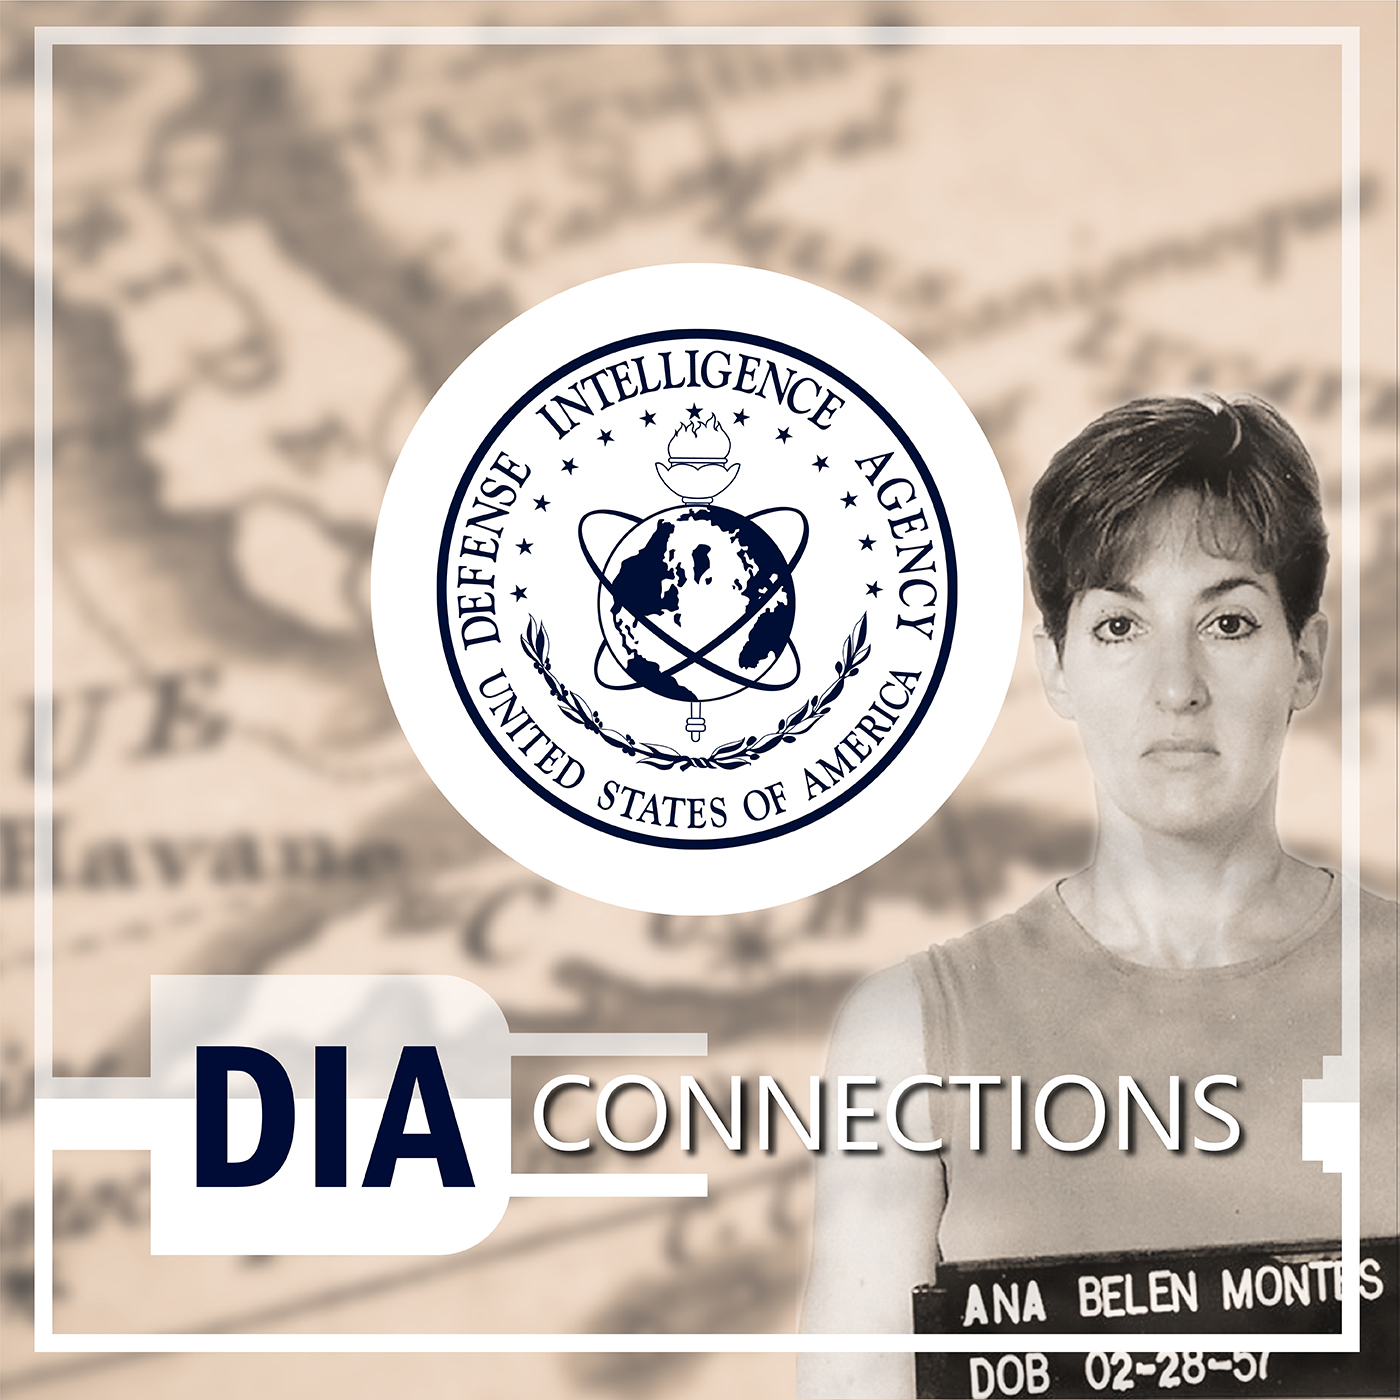 Image of woman with D-I-A Seal and title. D-I-A Connections.